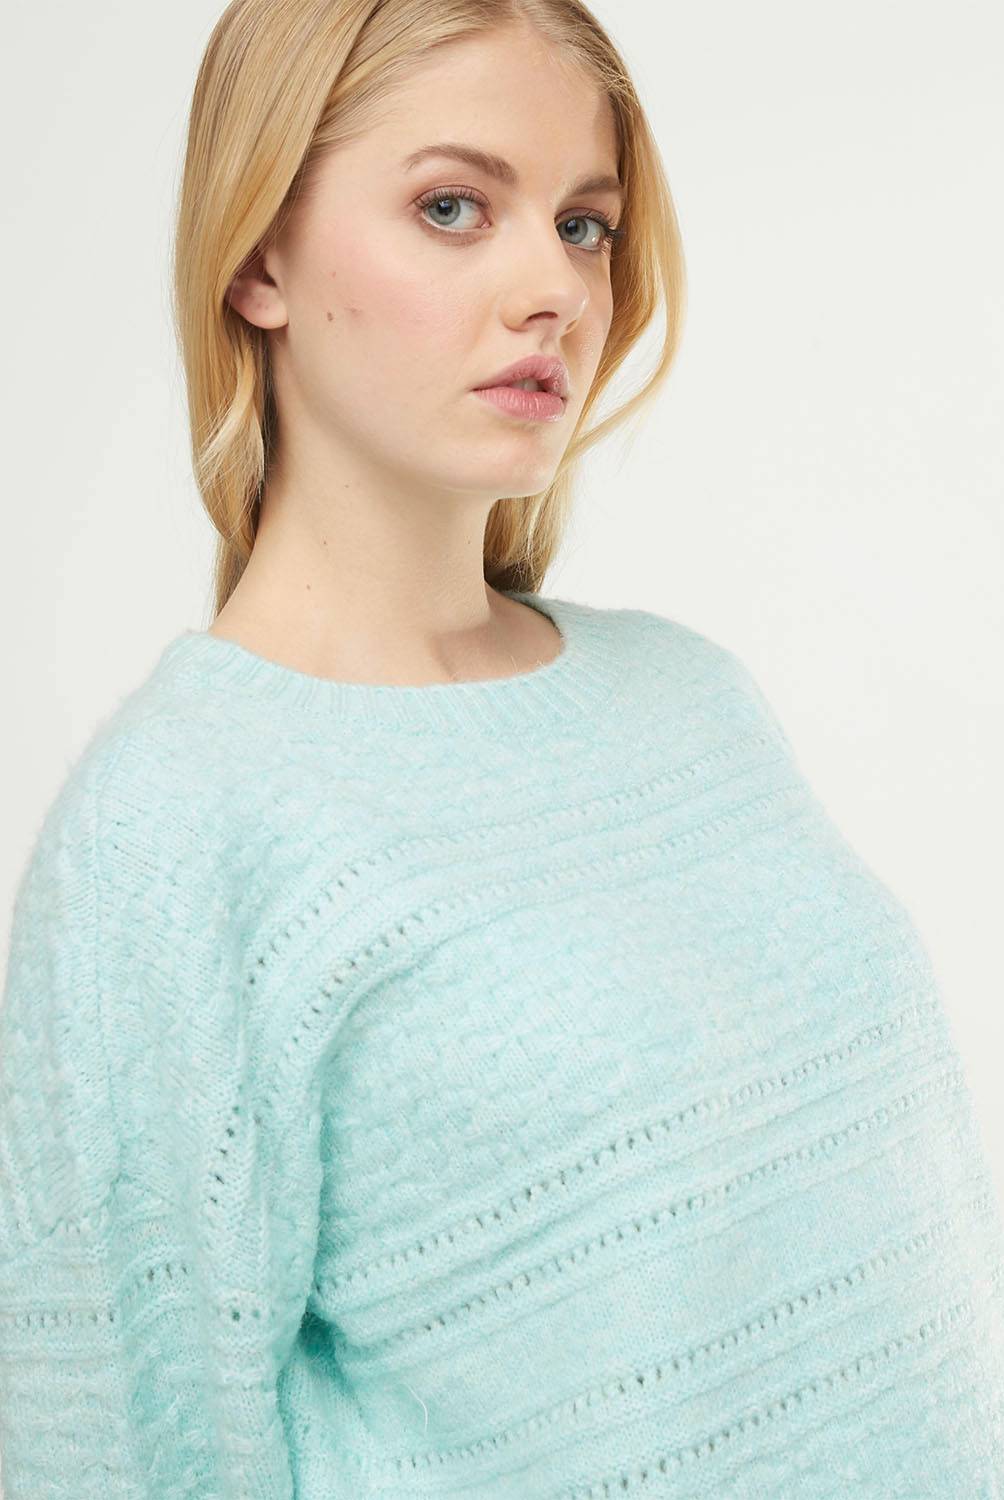 VERO MODA Vero Moda Sweater Mujer | falabella.com